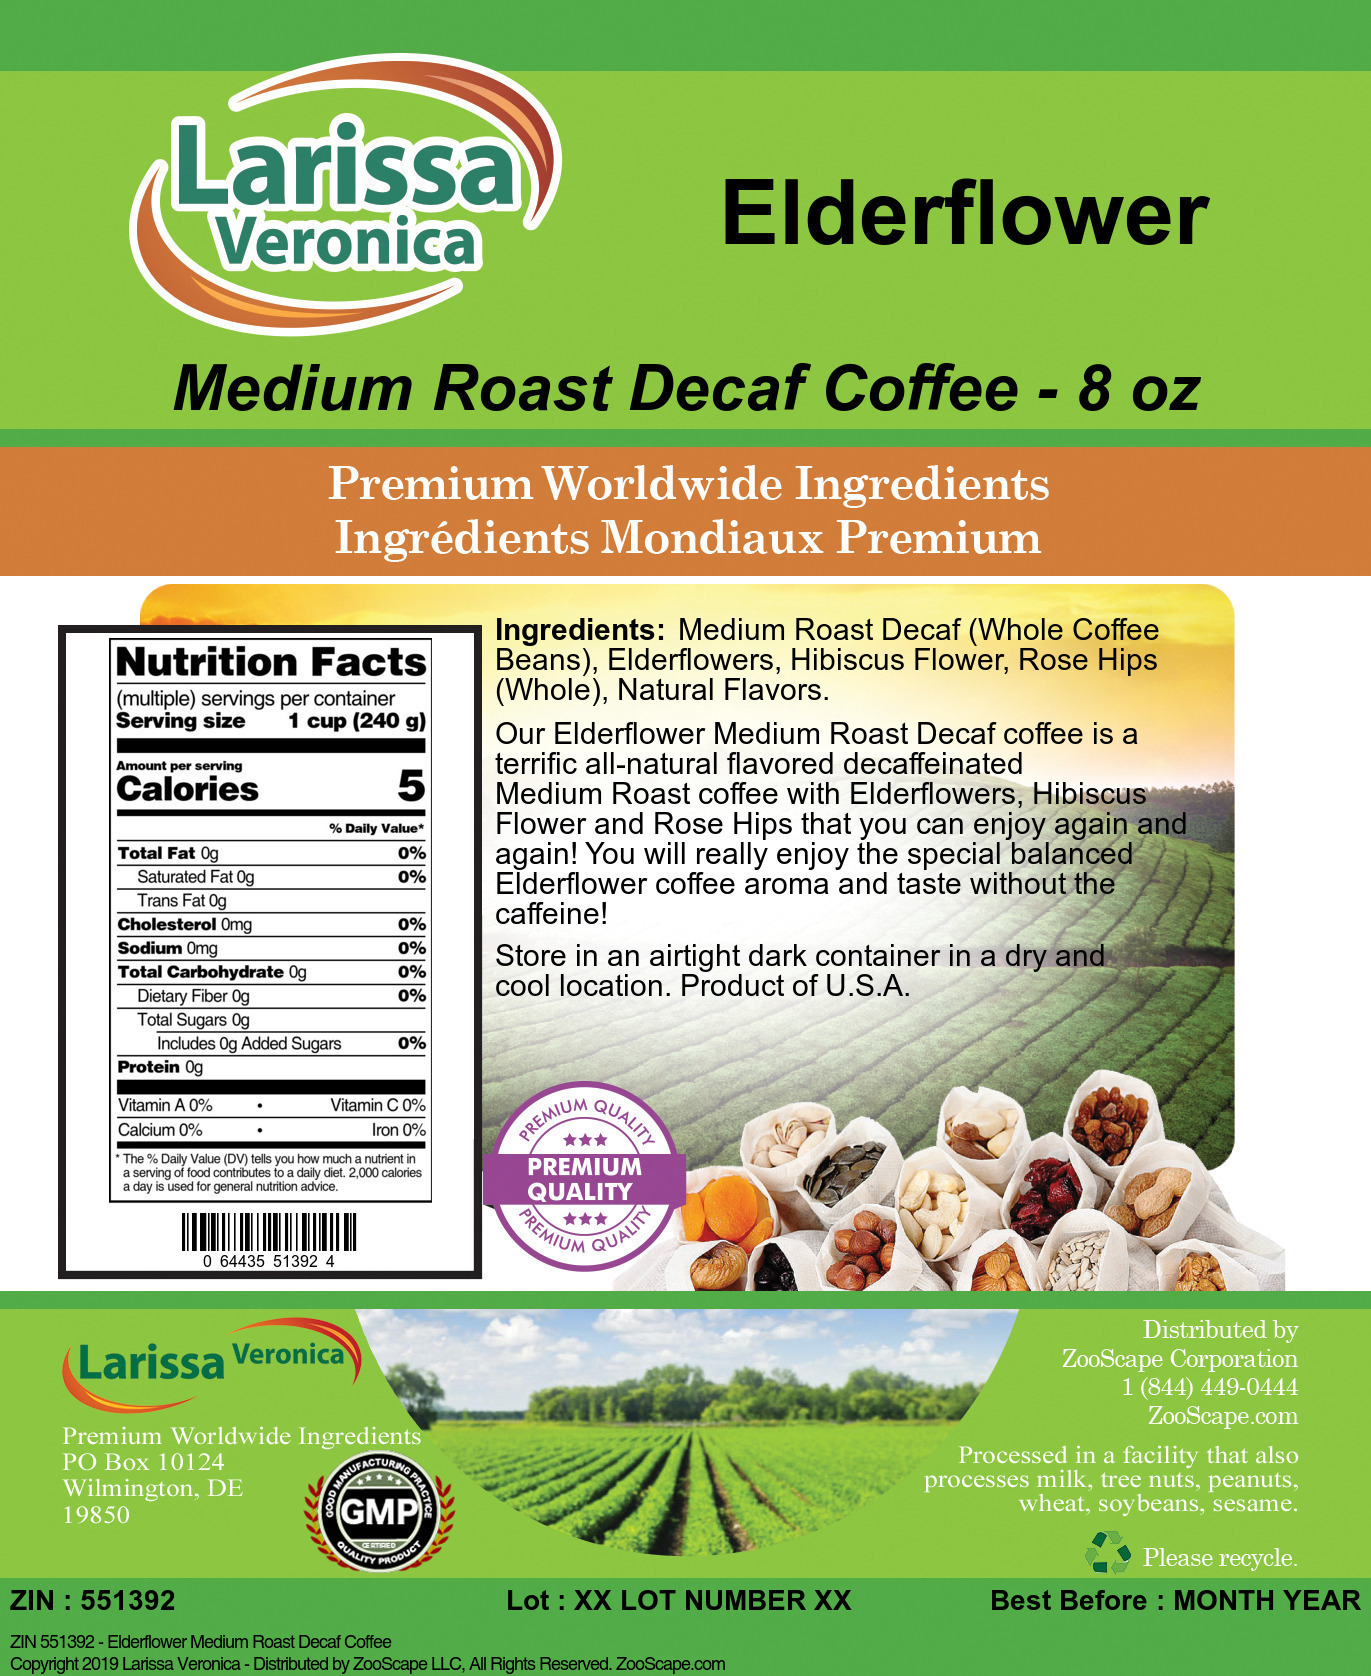 Elderflower Medium Roast Decaf Coffee - Label